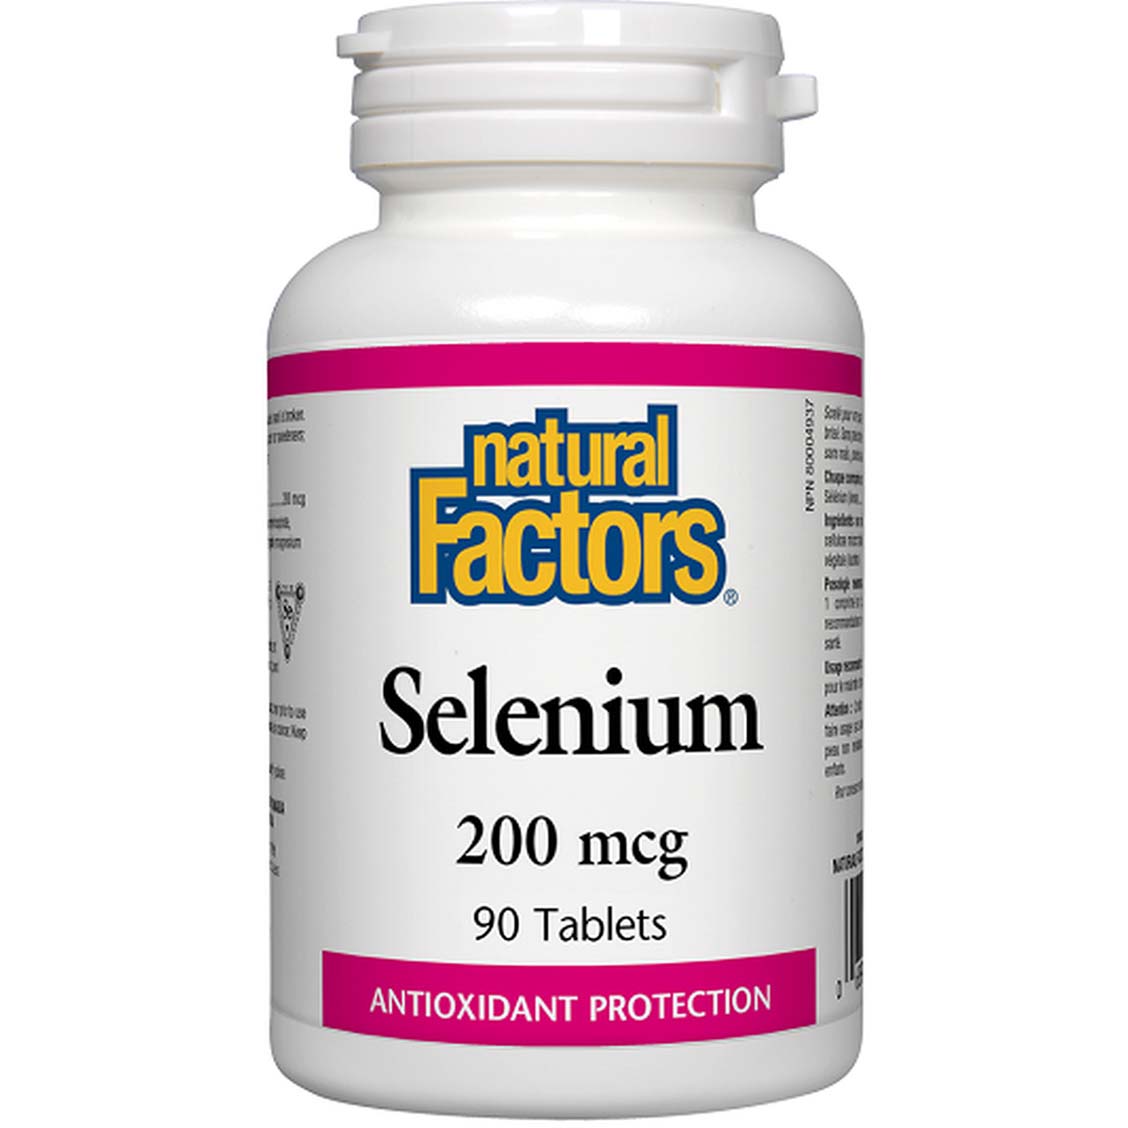 Natural Factors Selenium, 200 mcg, 90 Tablets